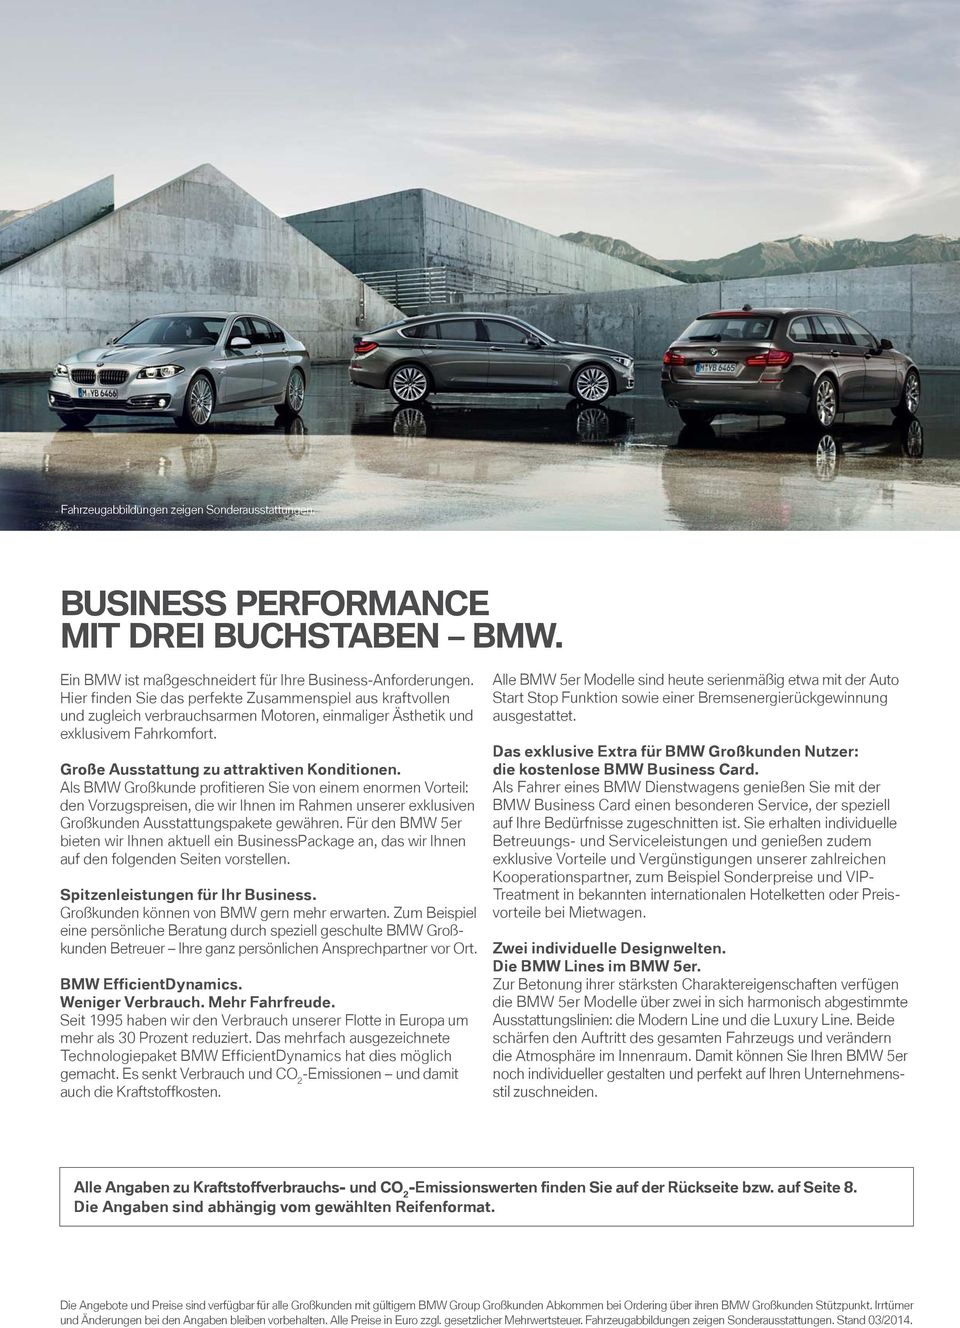 Als BMW Großkunde profitieren Sie von einem enormen Vorteil: den Vorzugspreisen, die wir Ihnen im Rahmen unserer eklusiven Großkunden Ausstattungspakete gewähren.